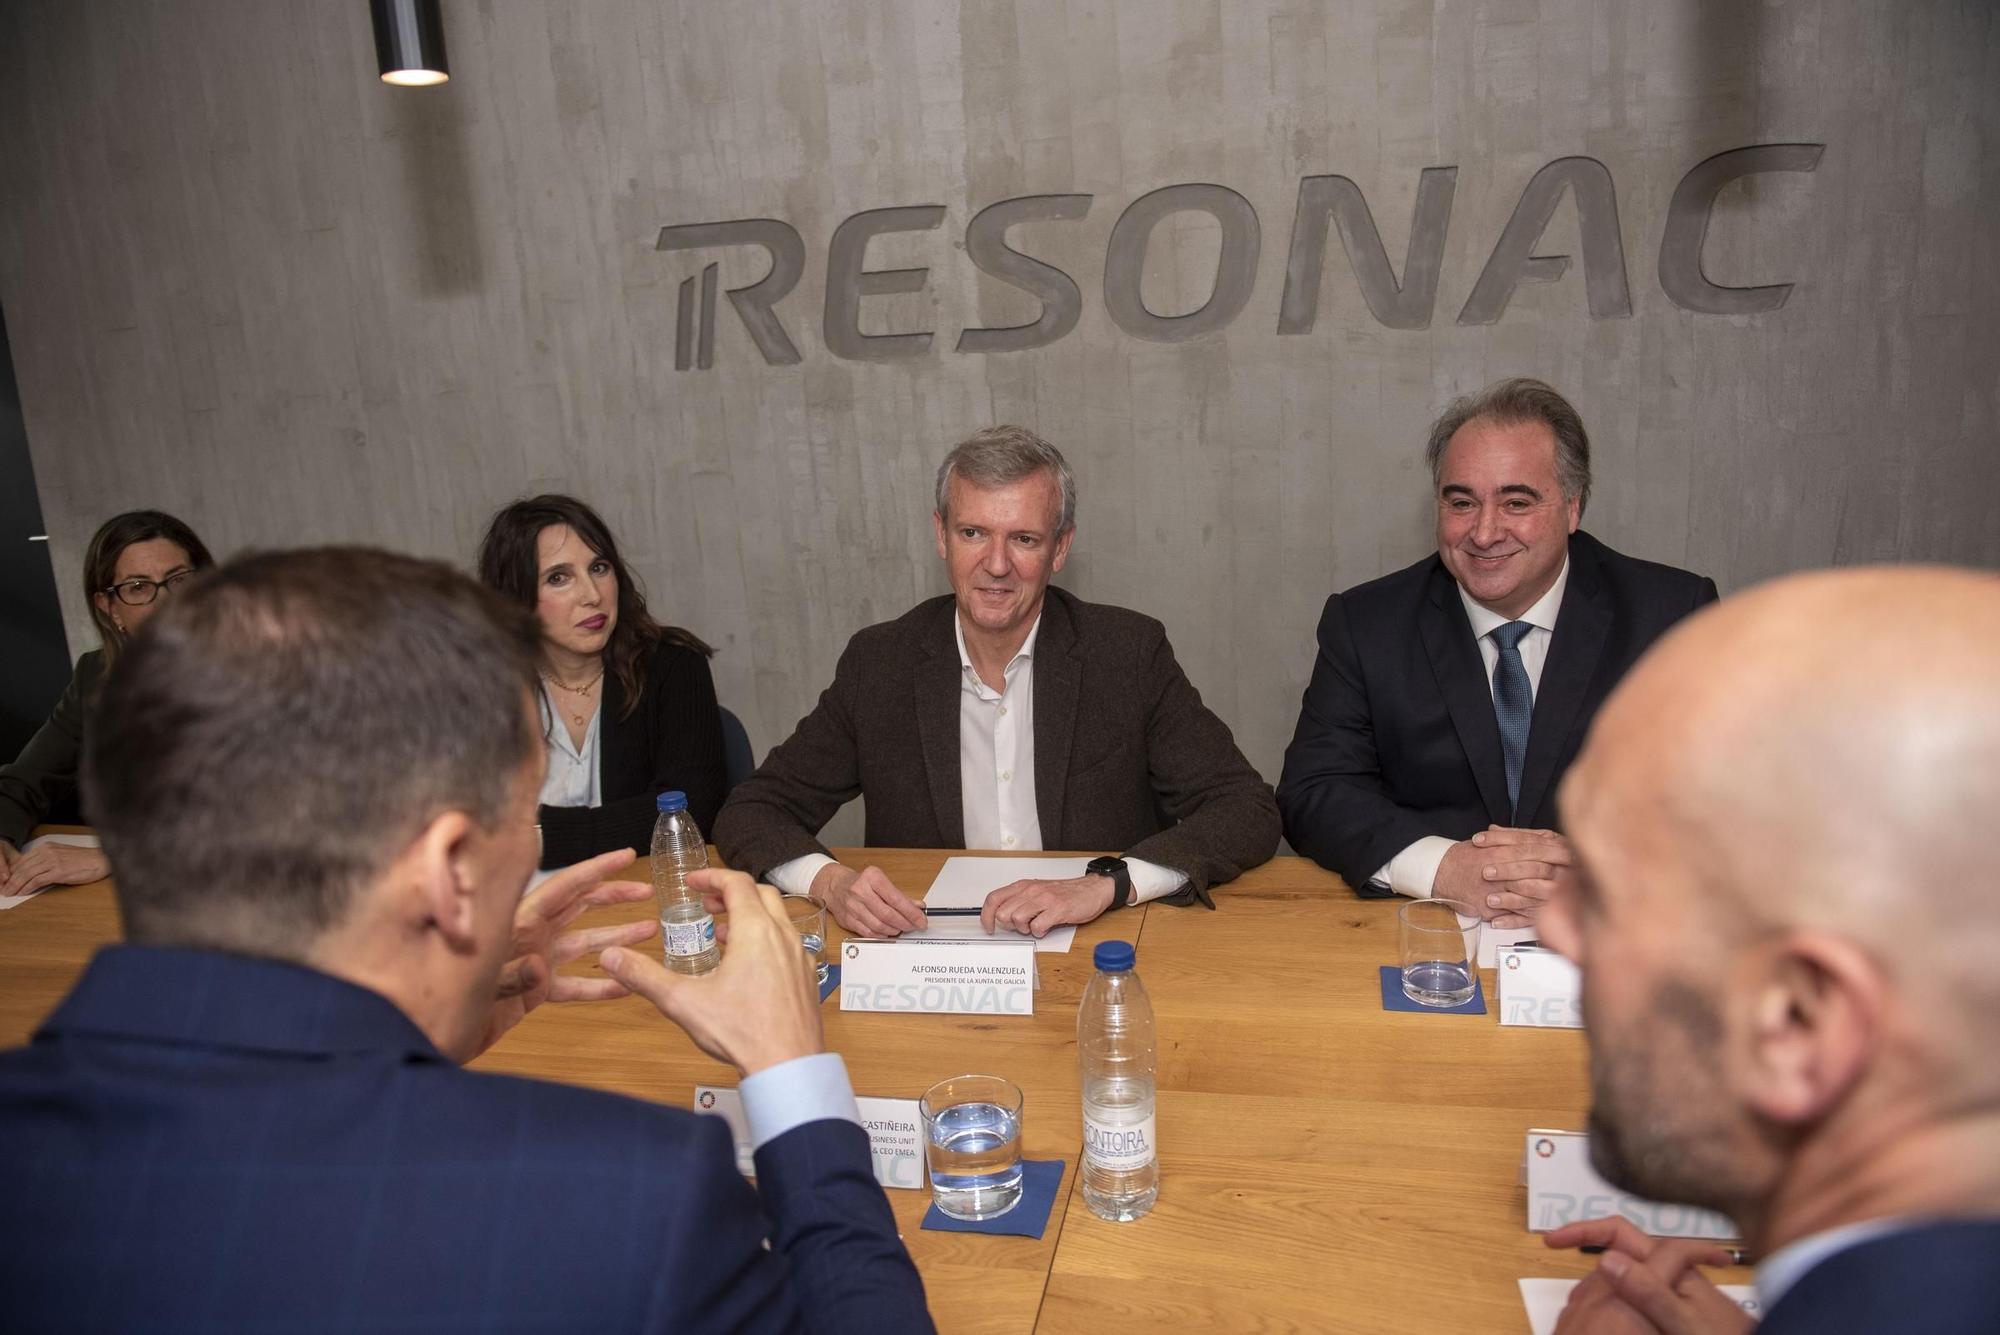 Alfonso Rueda visita Resonac, en A Grela